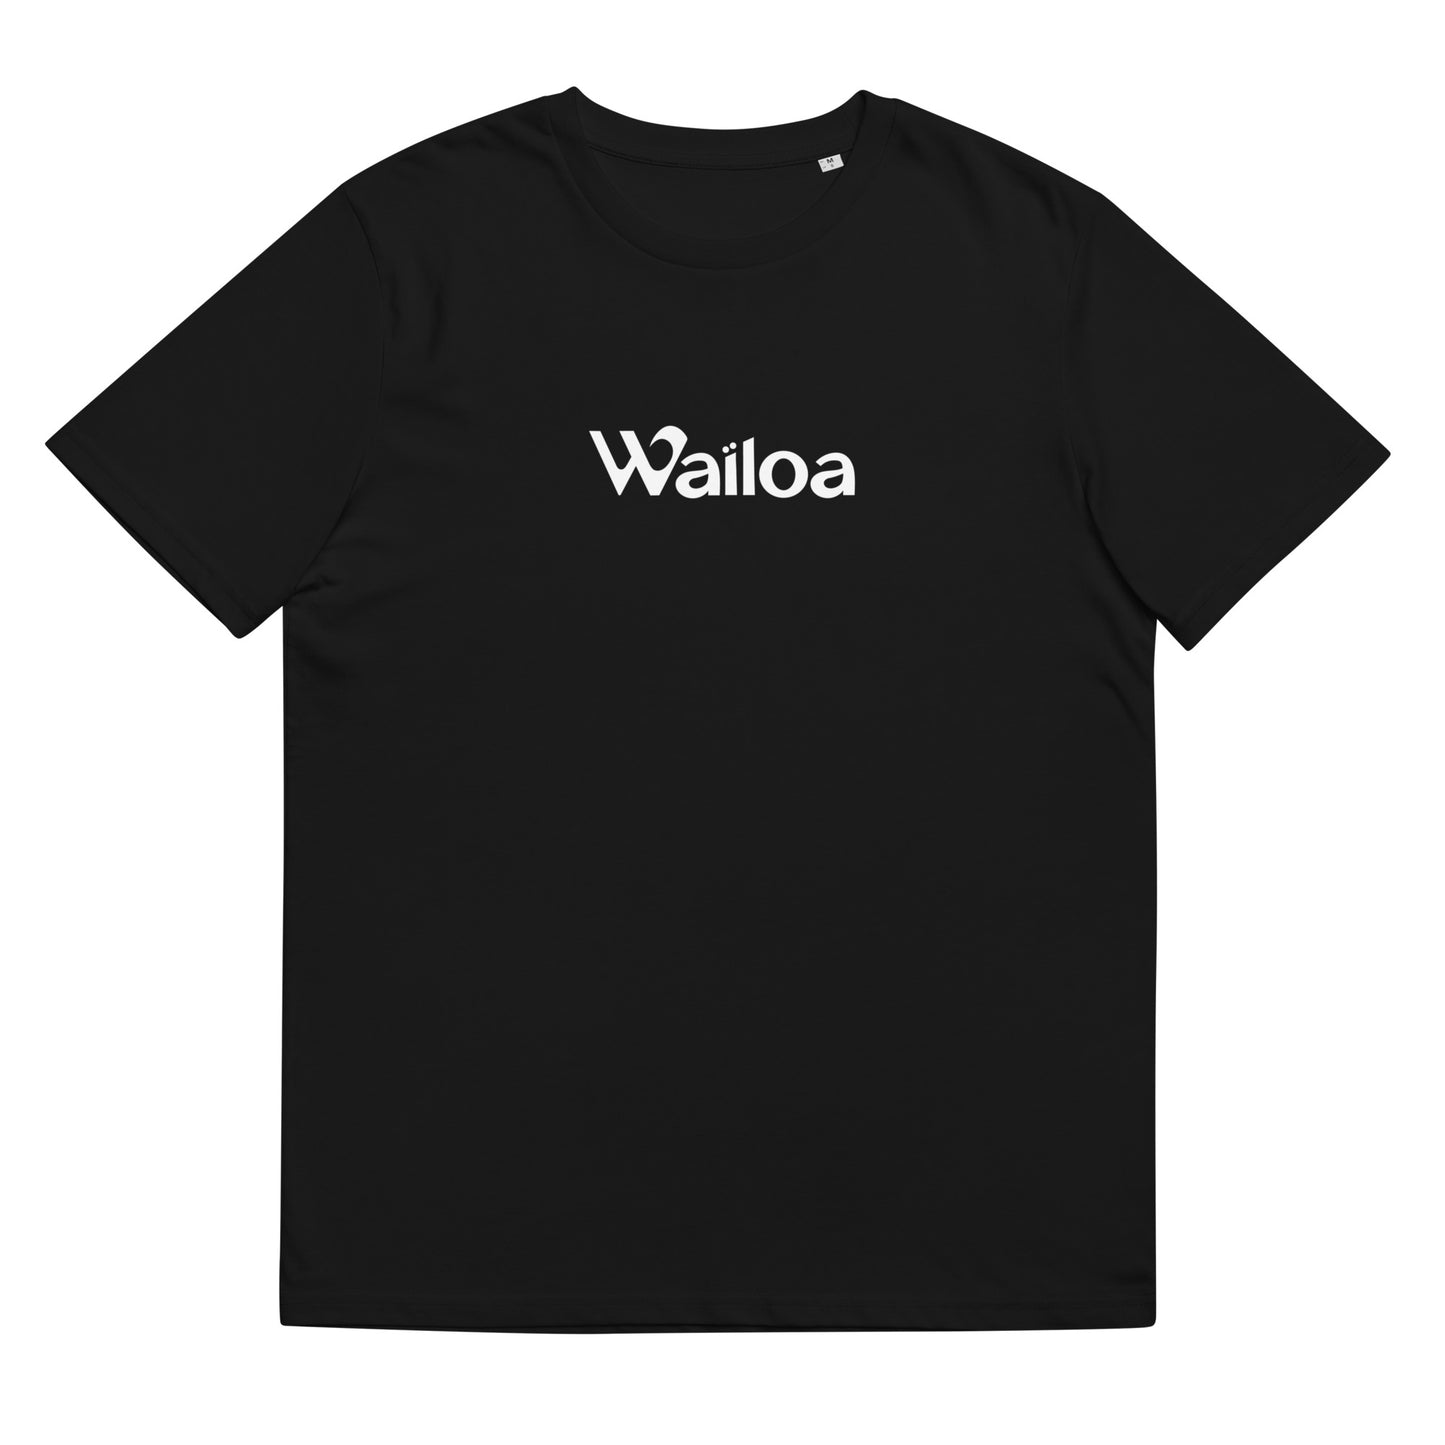 T-shirt à manches courtes unisexe Waïloa fabriqué en coton biologique.